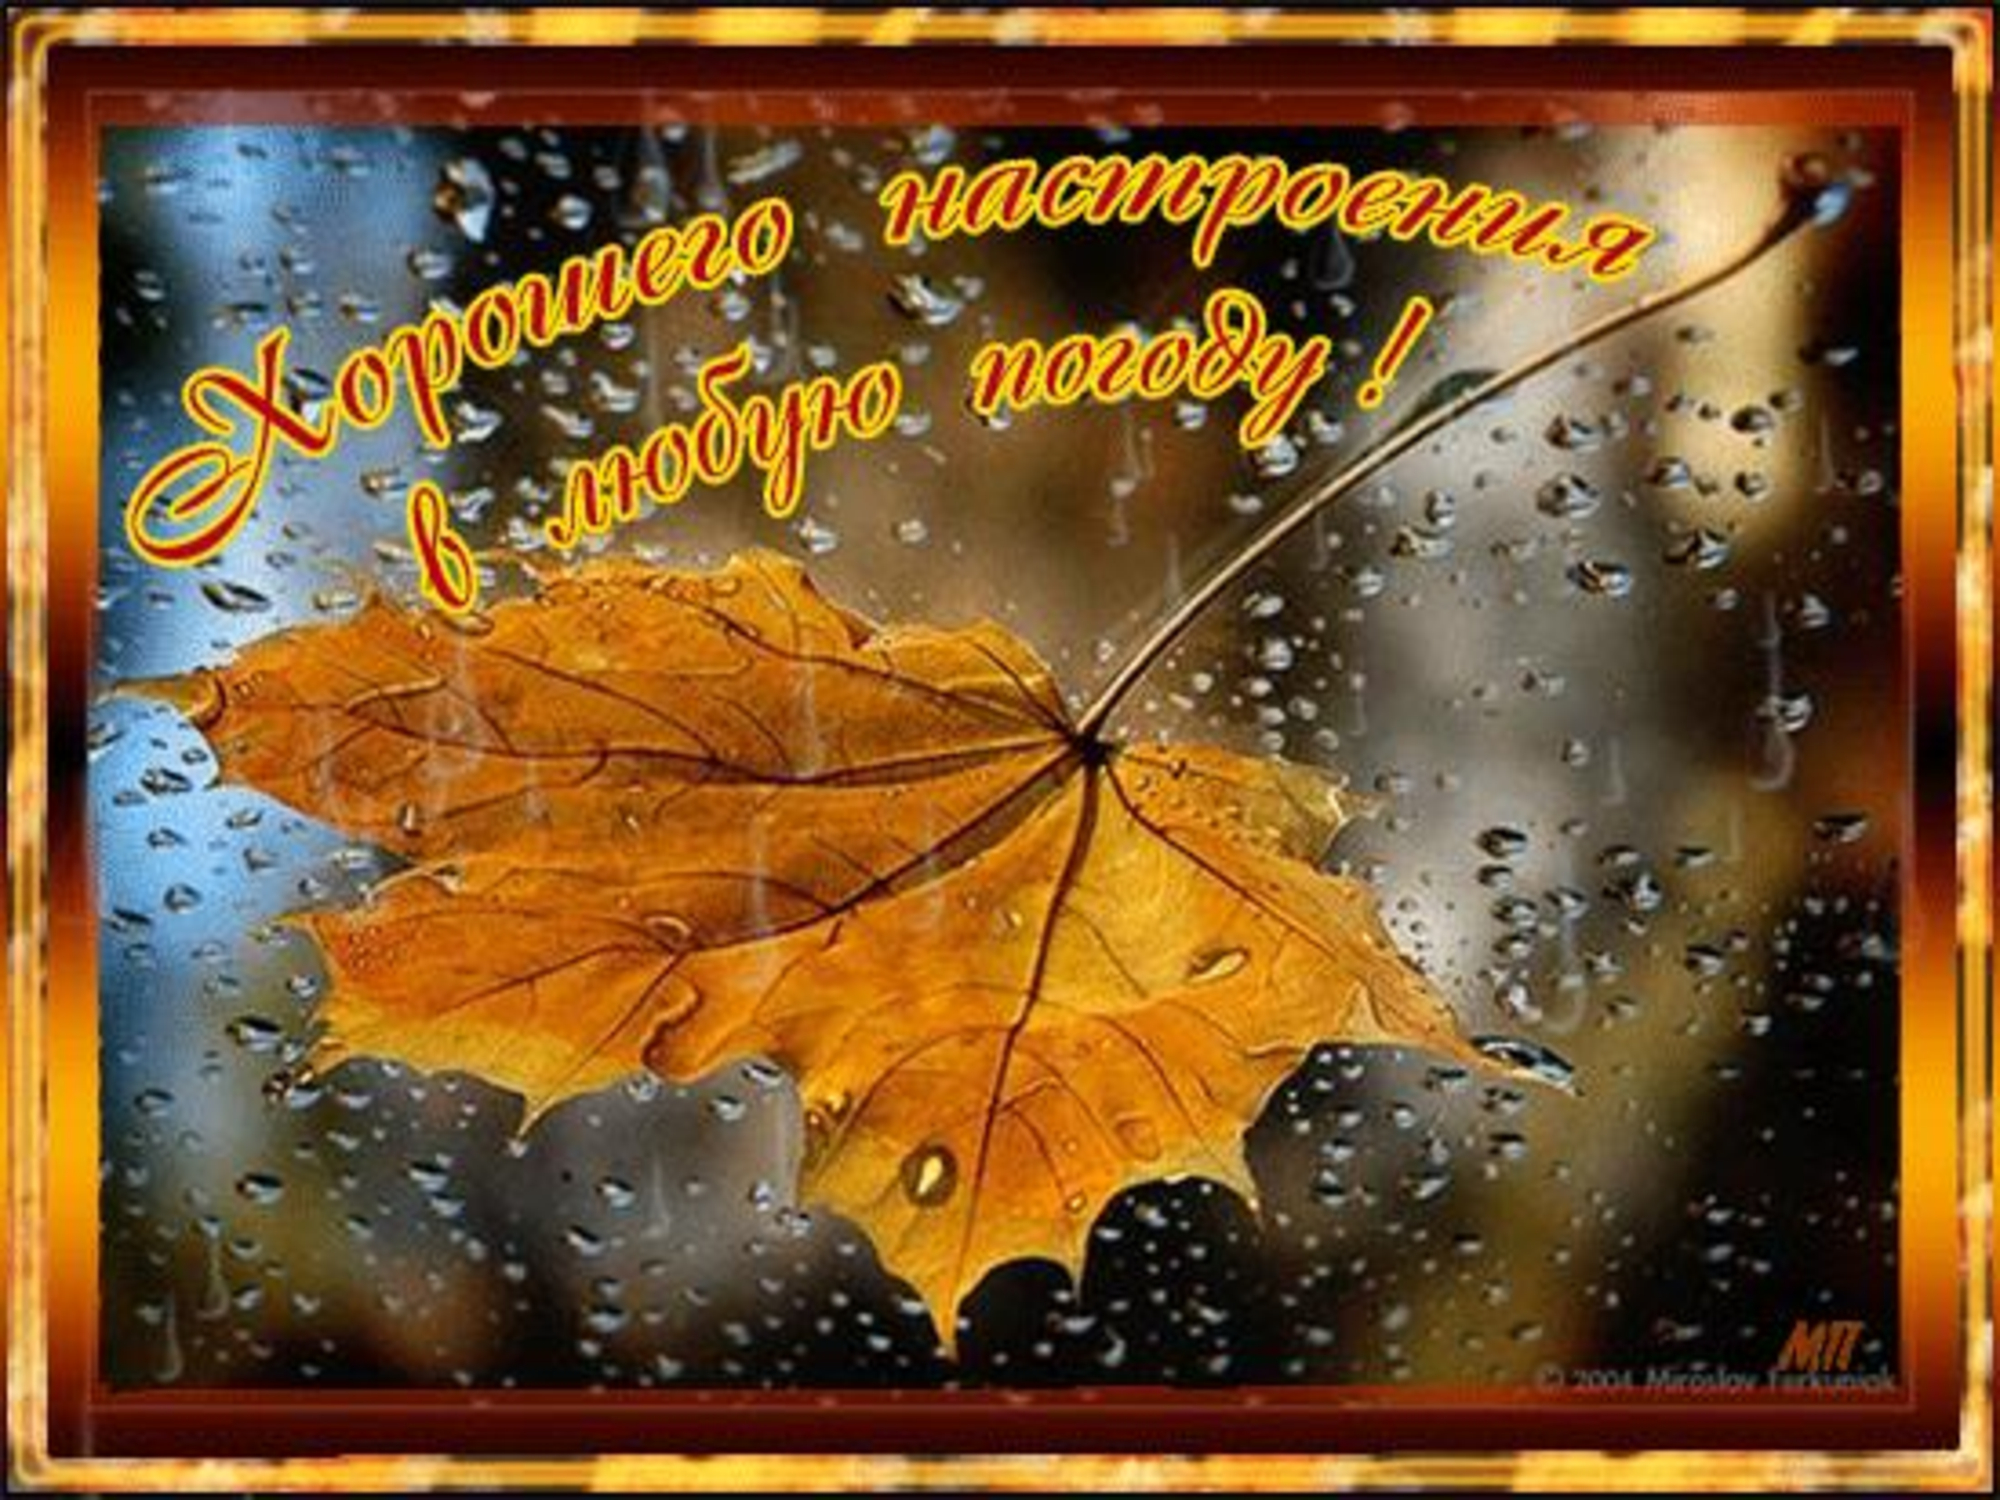 Хорошего настроения в любую погоду. Осеннего настроения в любую погоду. Хорошего настроения в любую погоду осень. Хорошего настроения дождливой осенью. Хорошего настроения в дождливую осень.